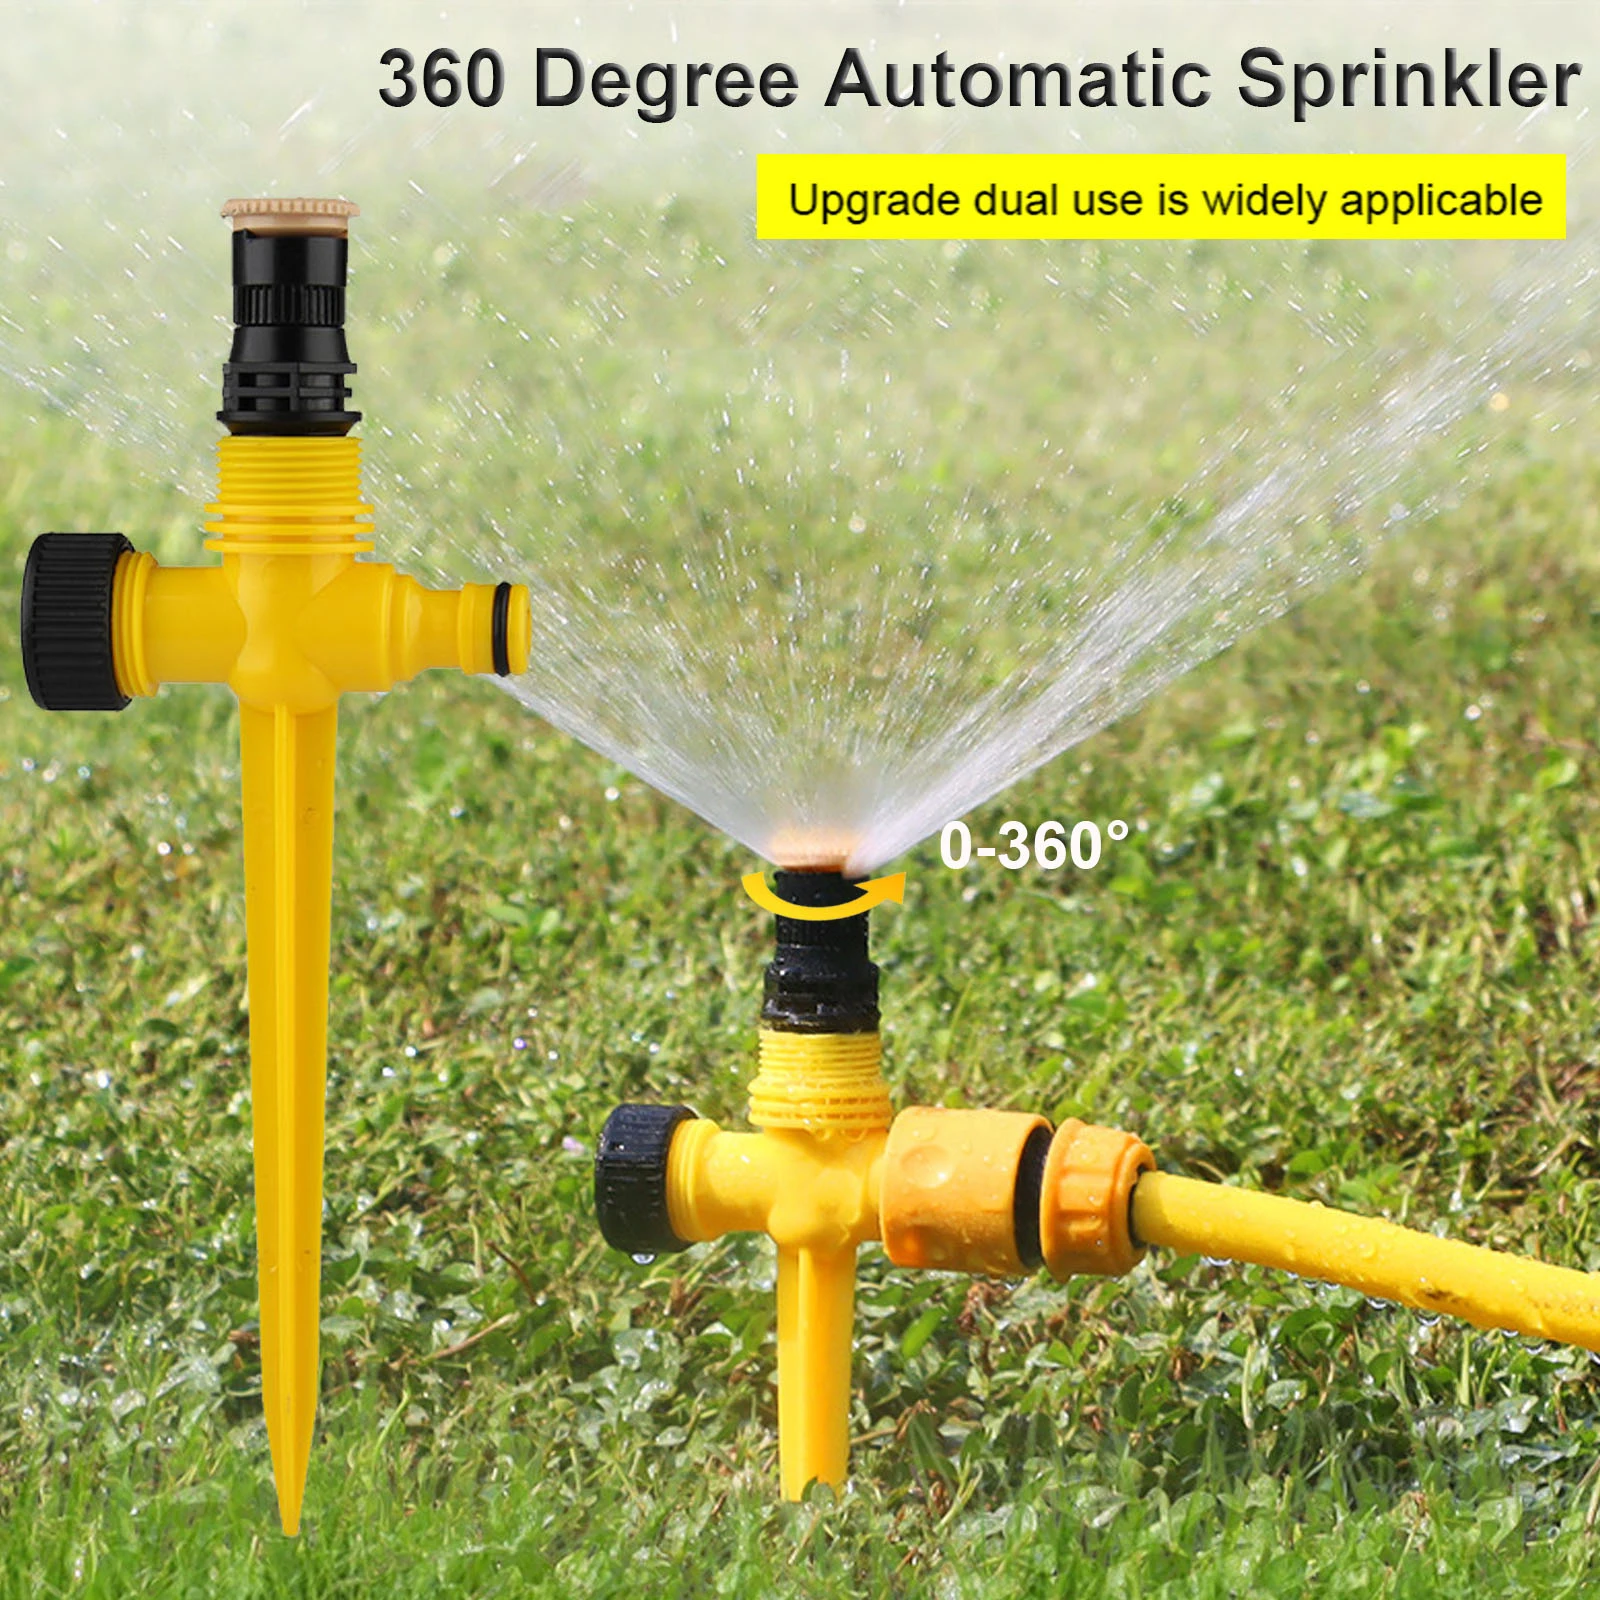 360 Degree Automatic Sprinkler Lawn Irrigation Head Adjustab